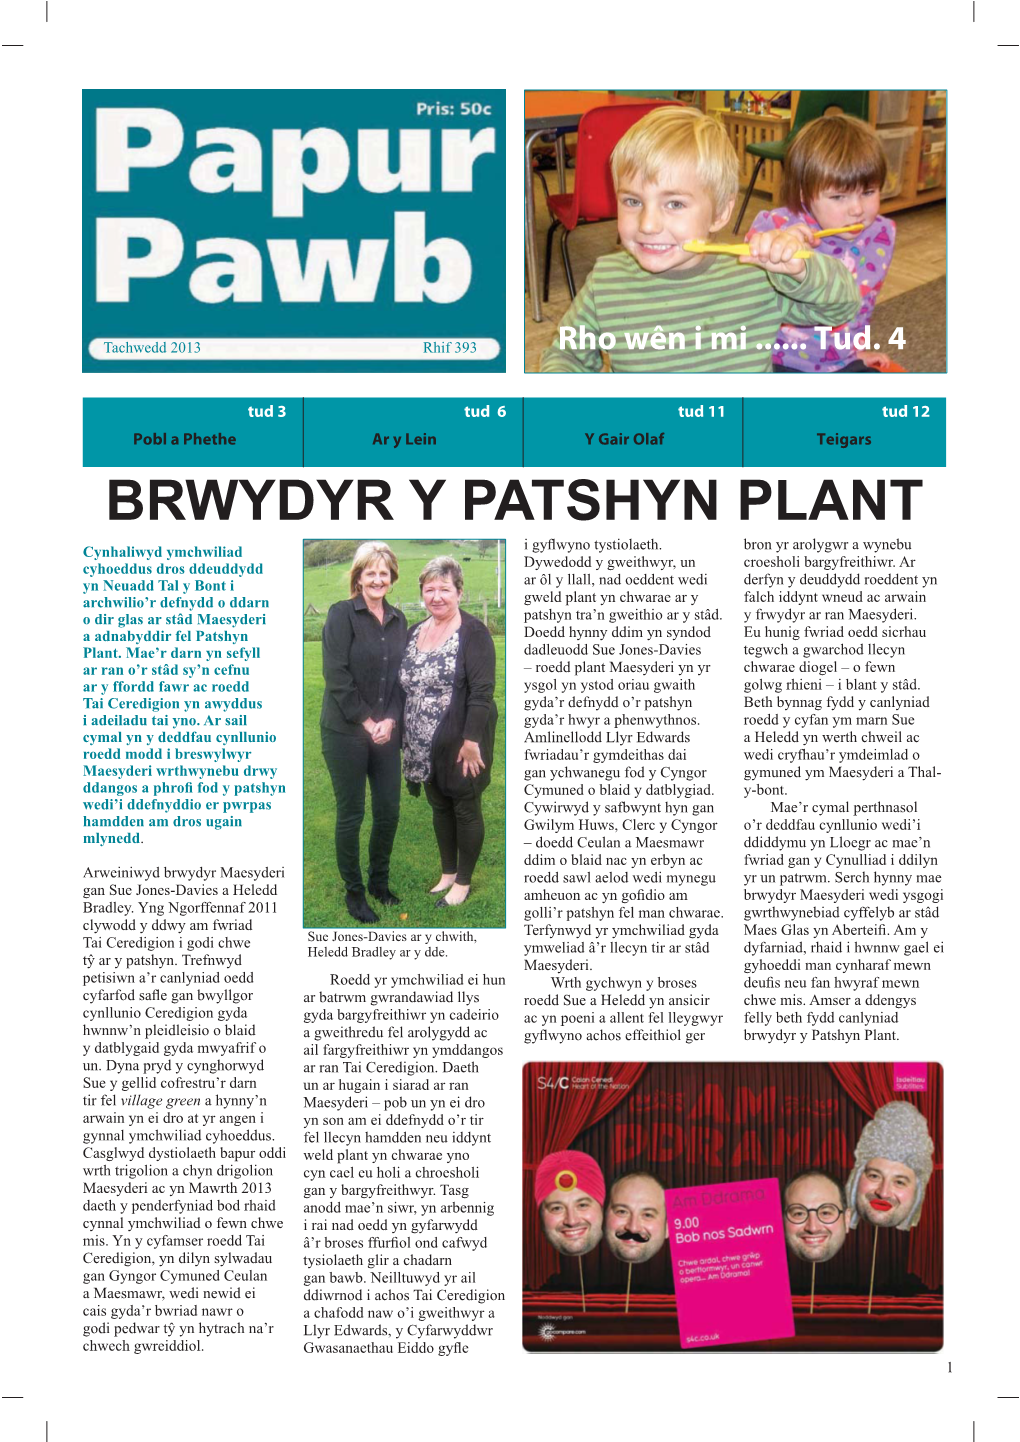 Brwydyr Y Patshyn Plant